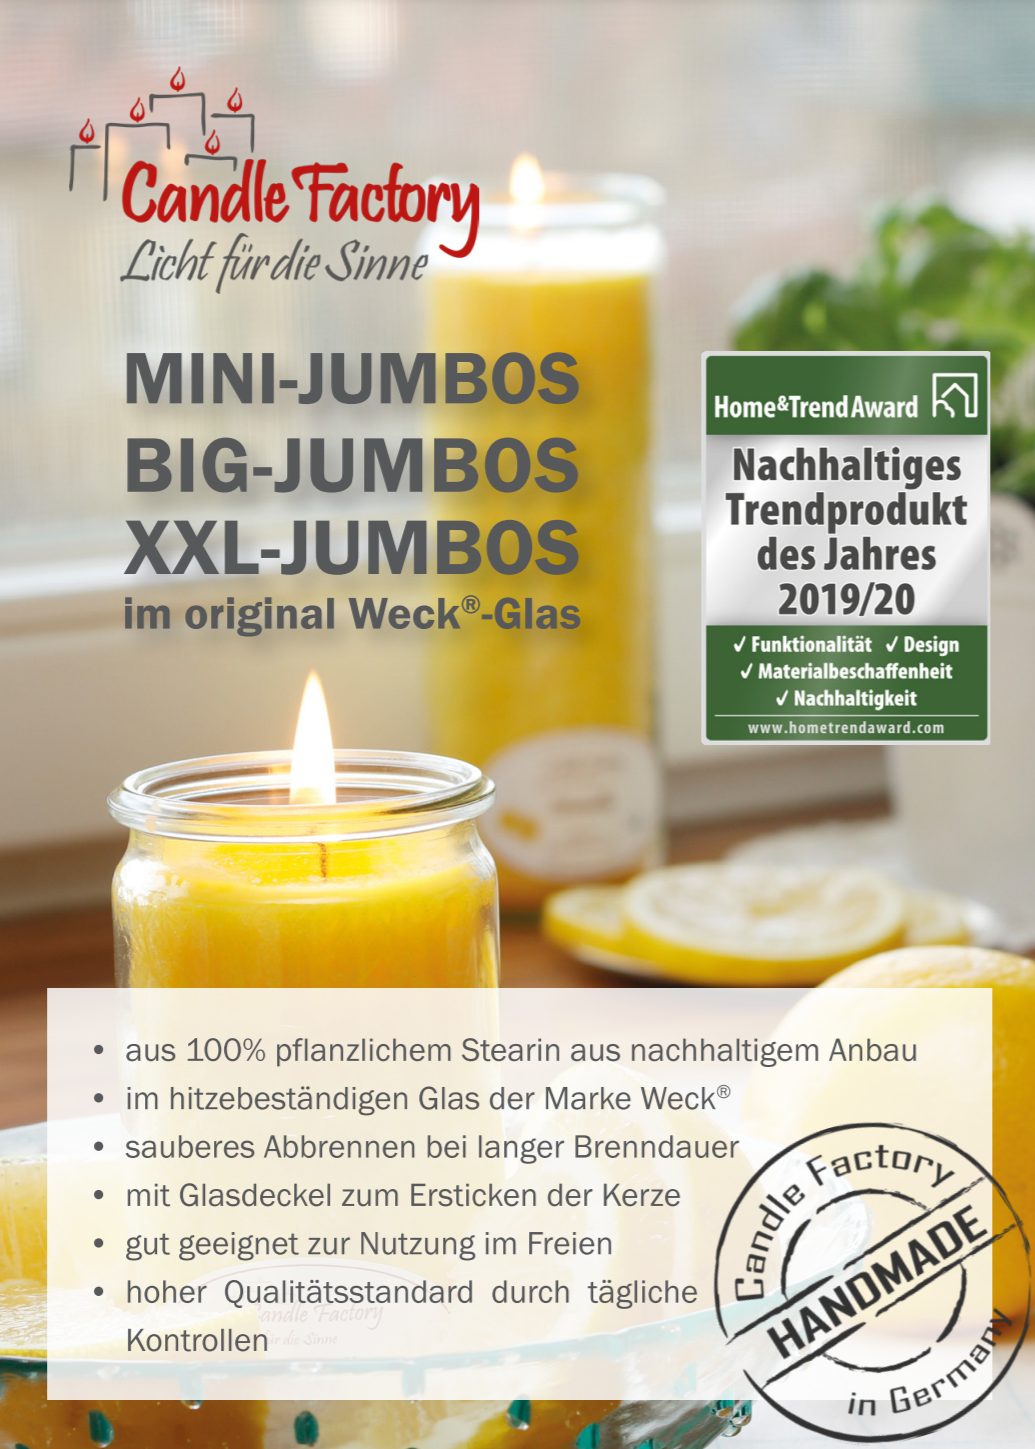 Candle Factory Mini-Jumbo Ingwertee